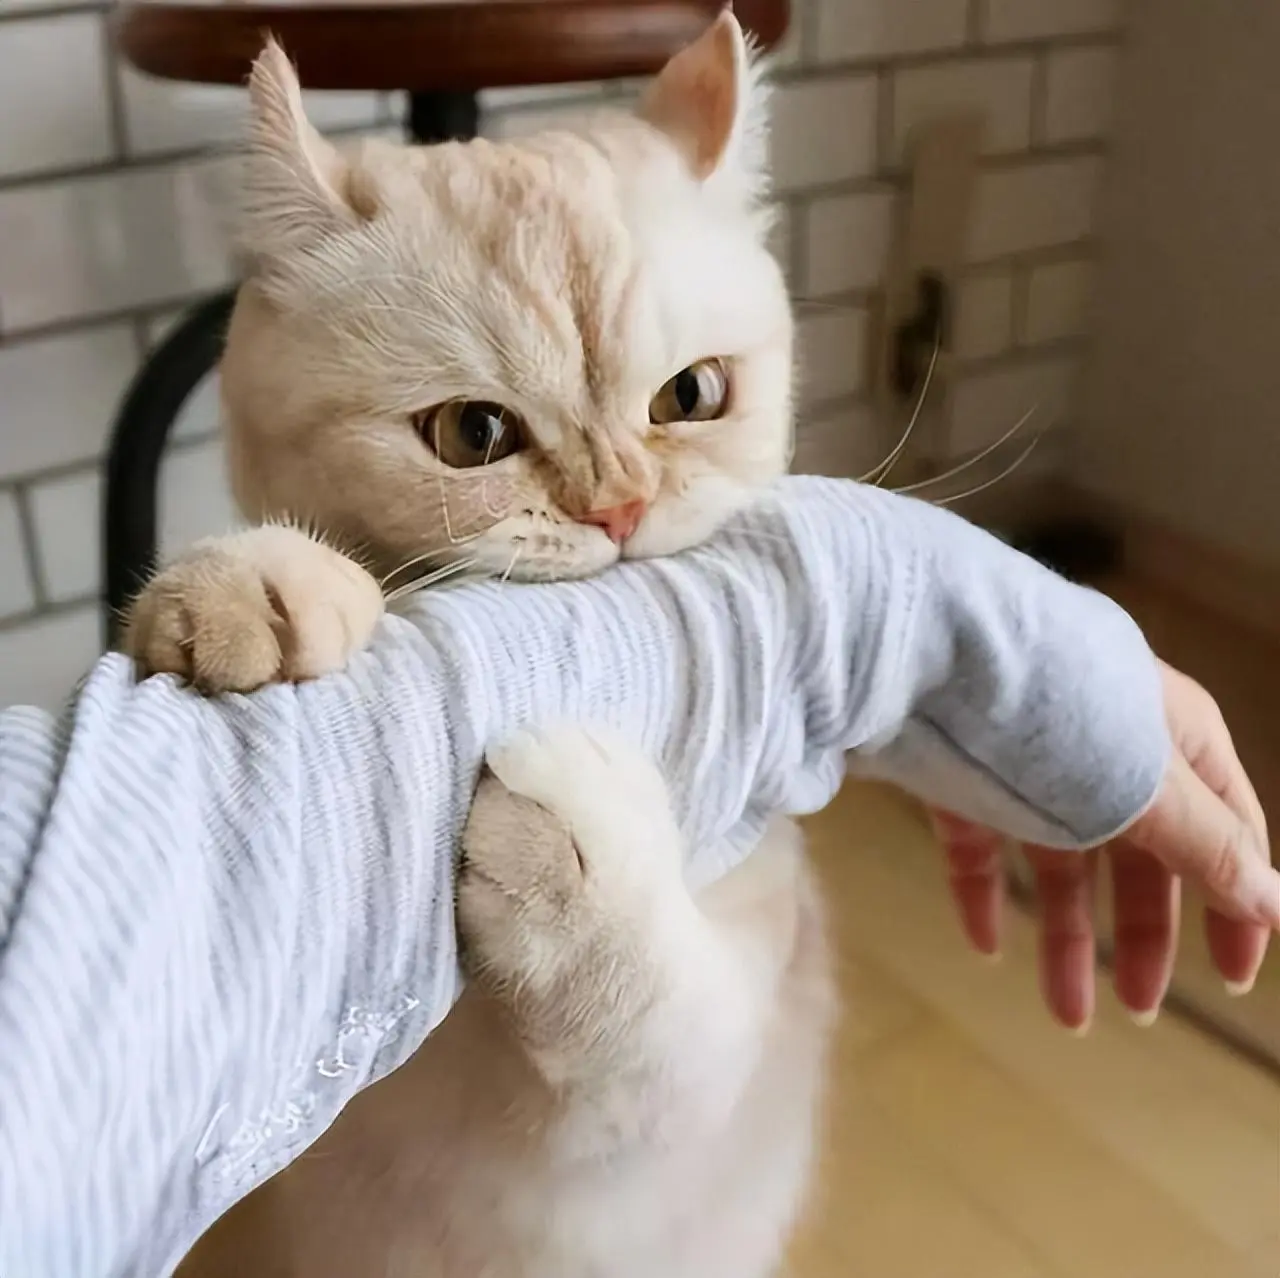 猫咪咬你的手是和你闹？别傻了，可能是在警告你